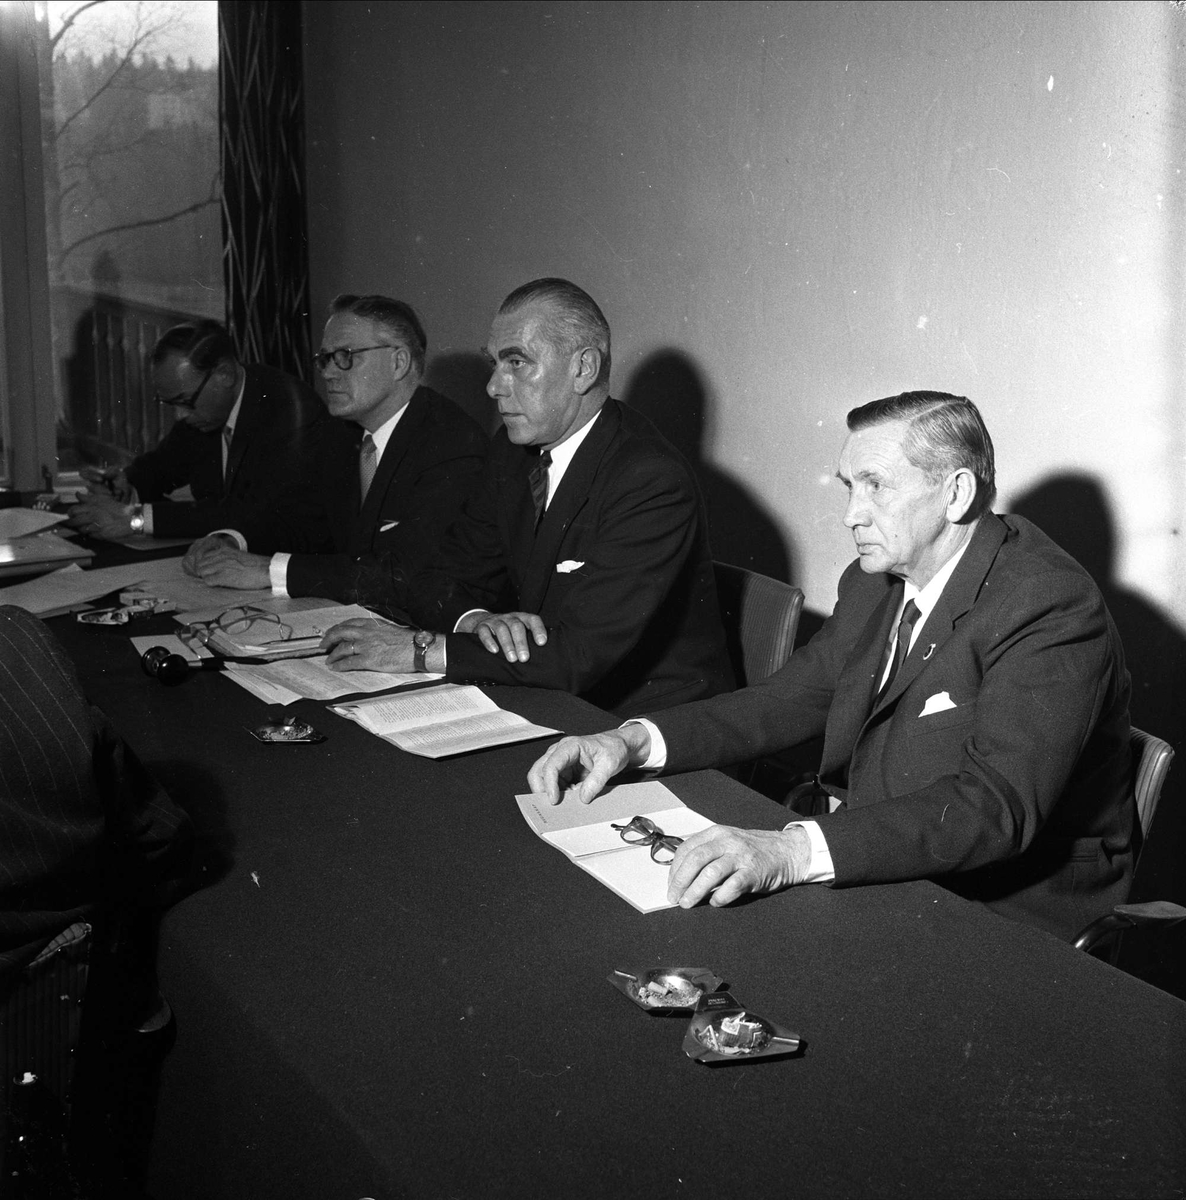 Generalforsamling på Øvrevoll. Bærum april 1959.